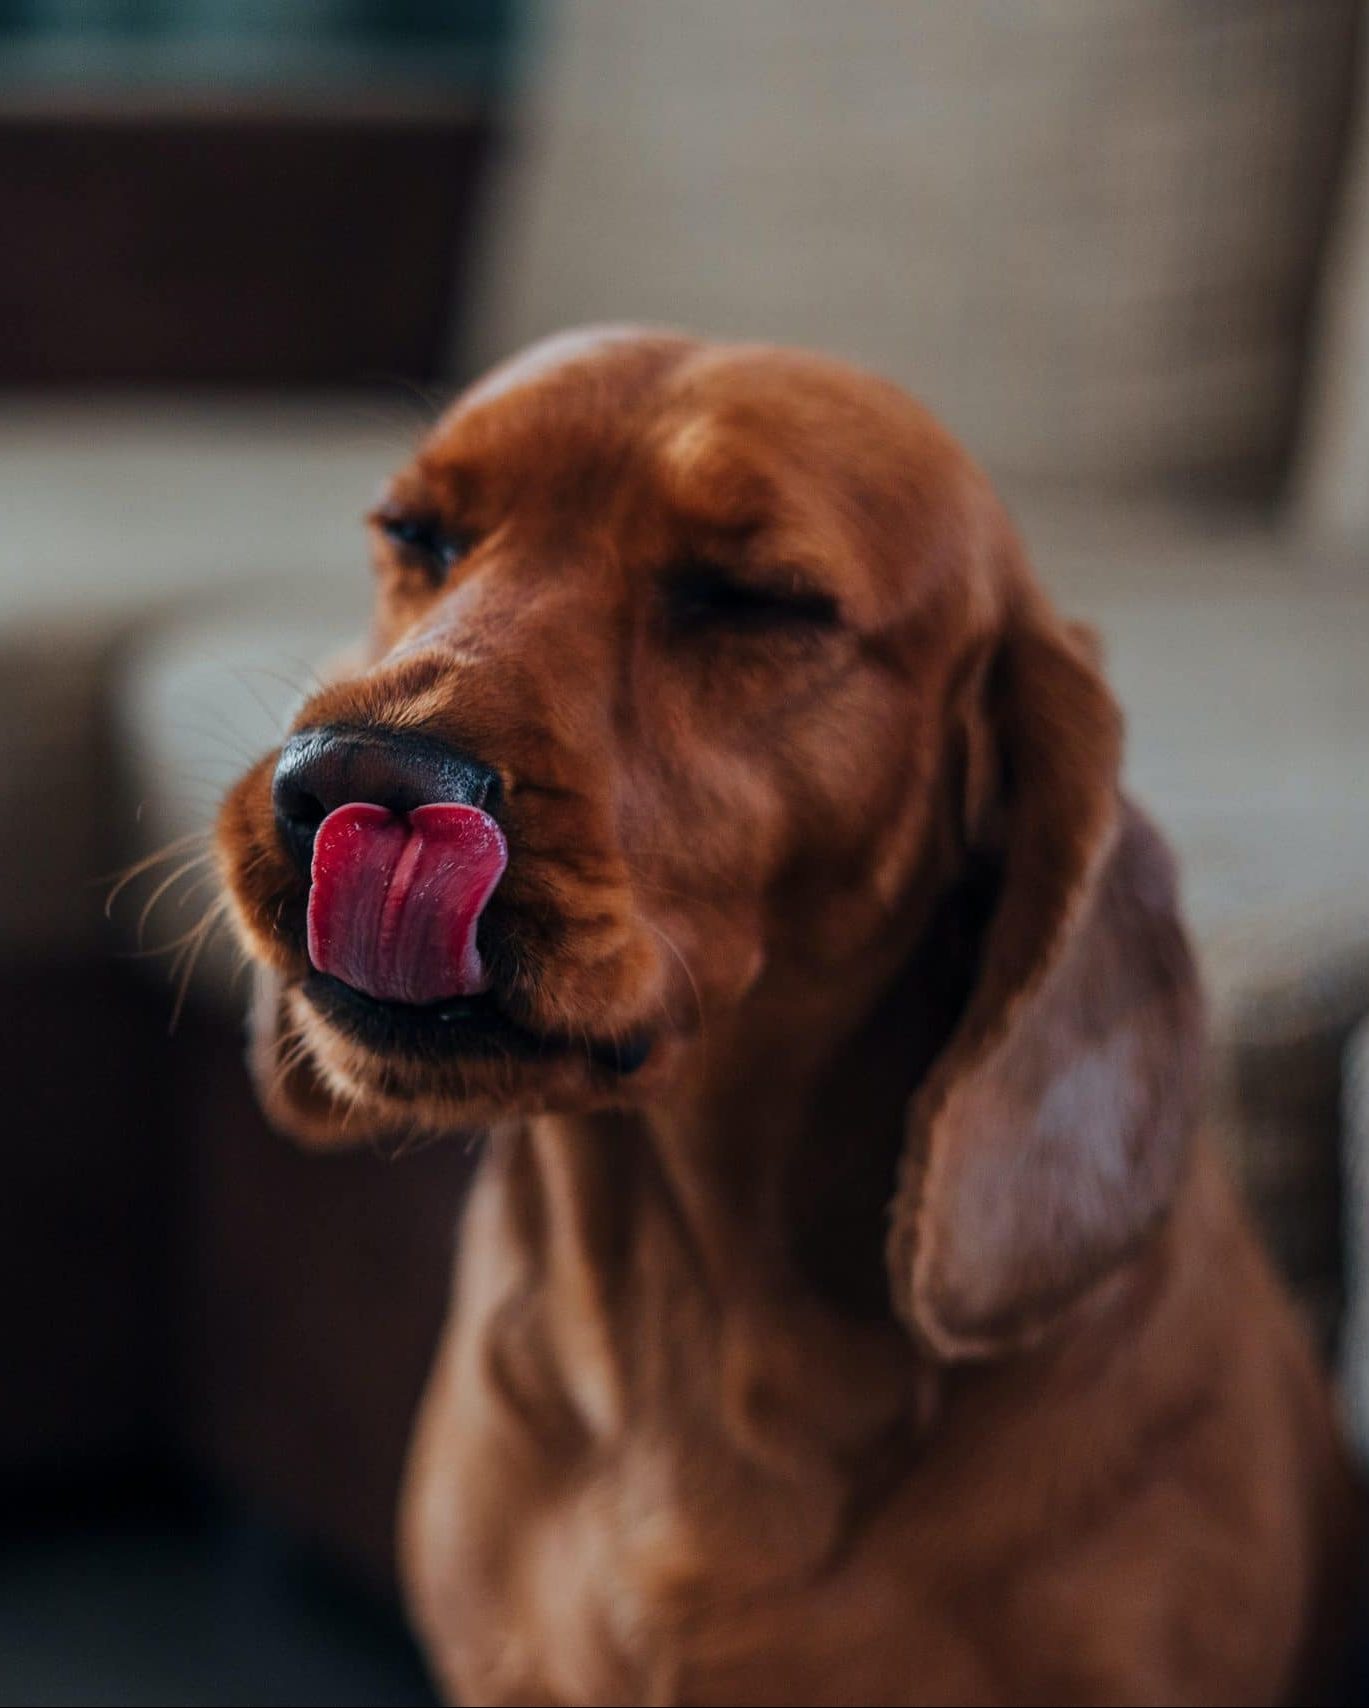 Dog licking its nose.